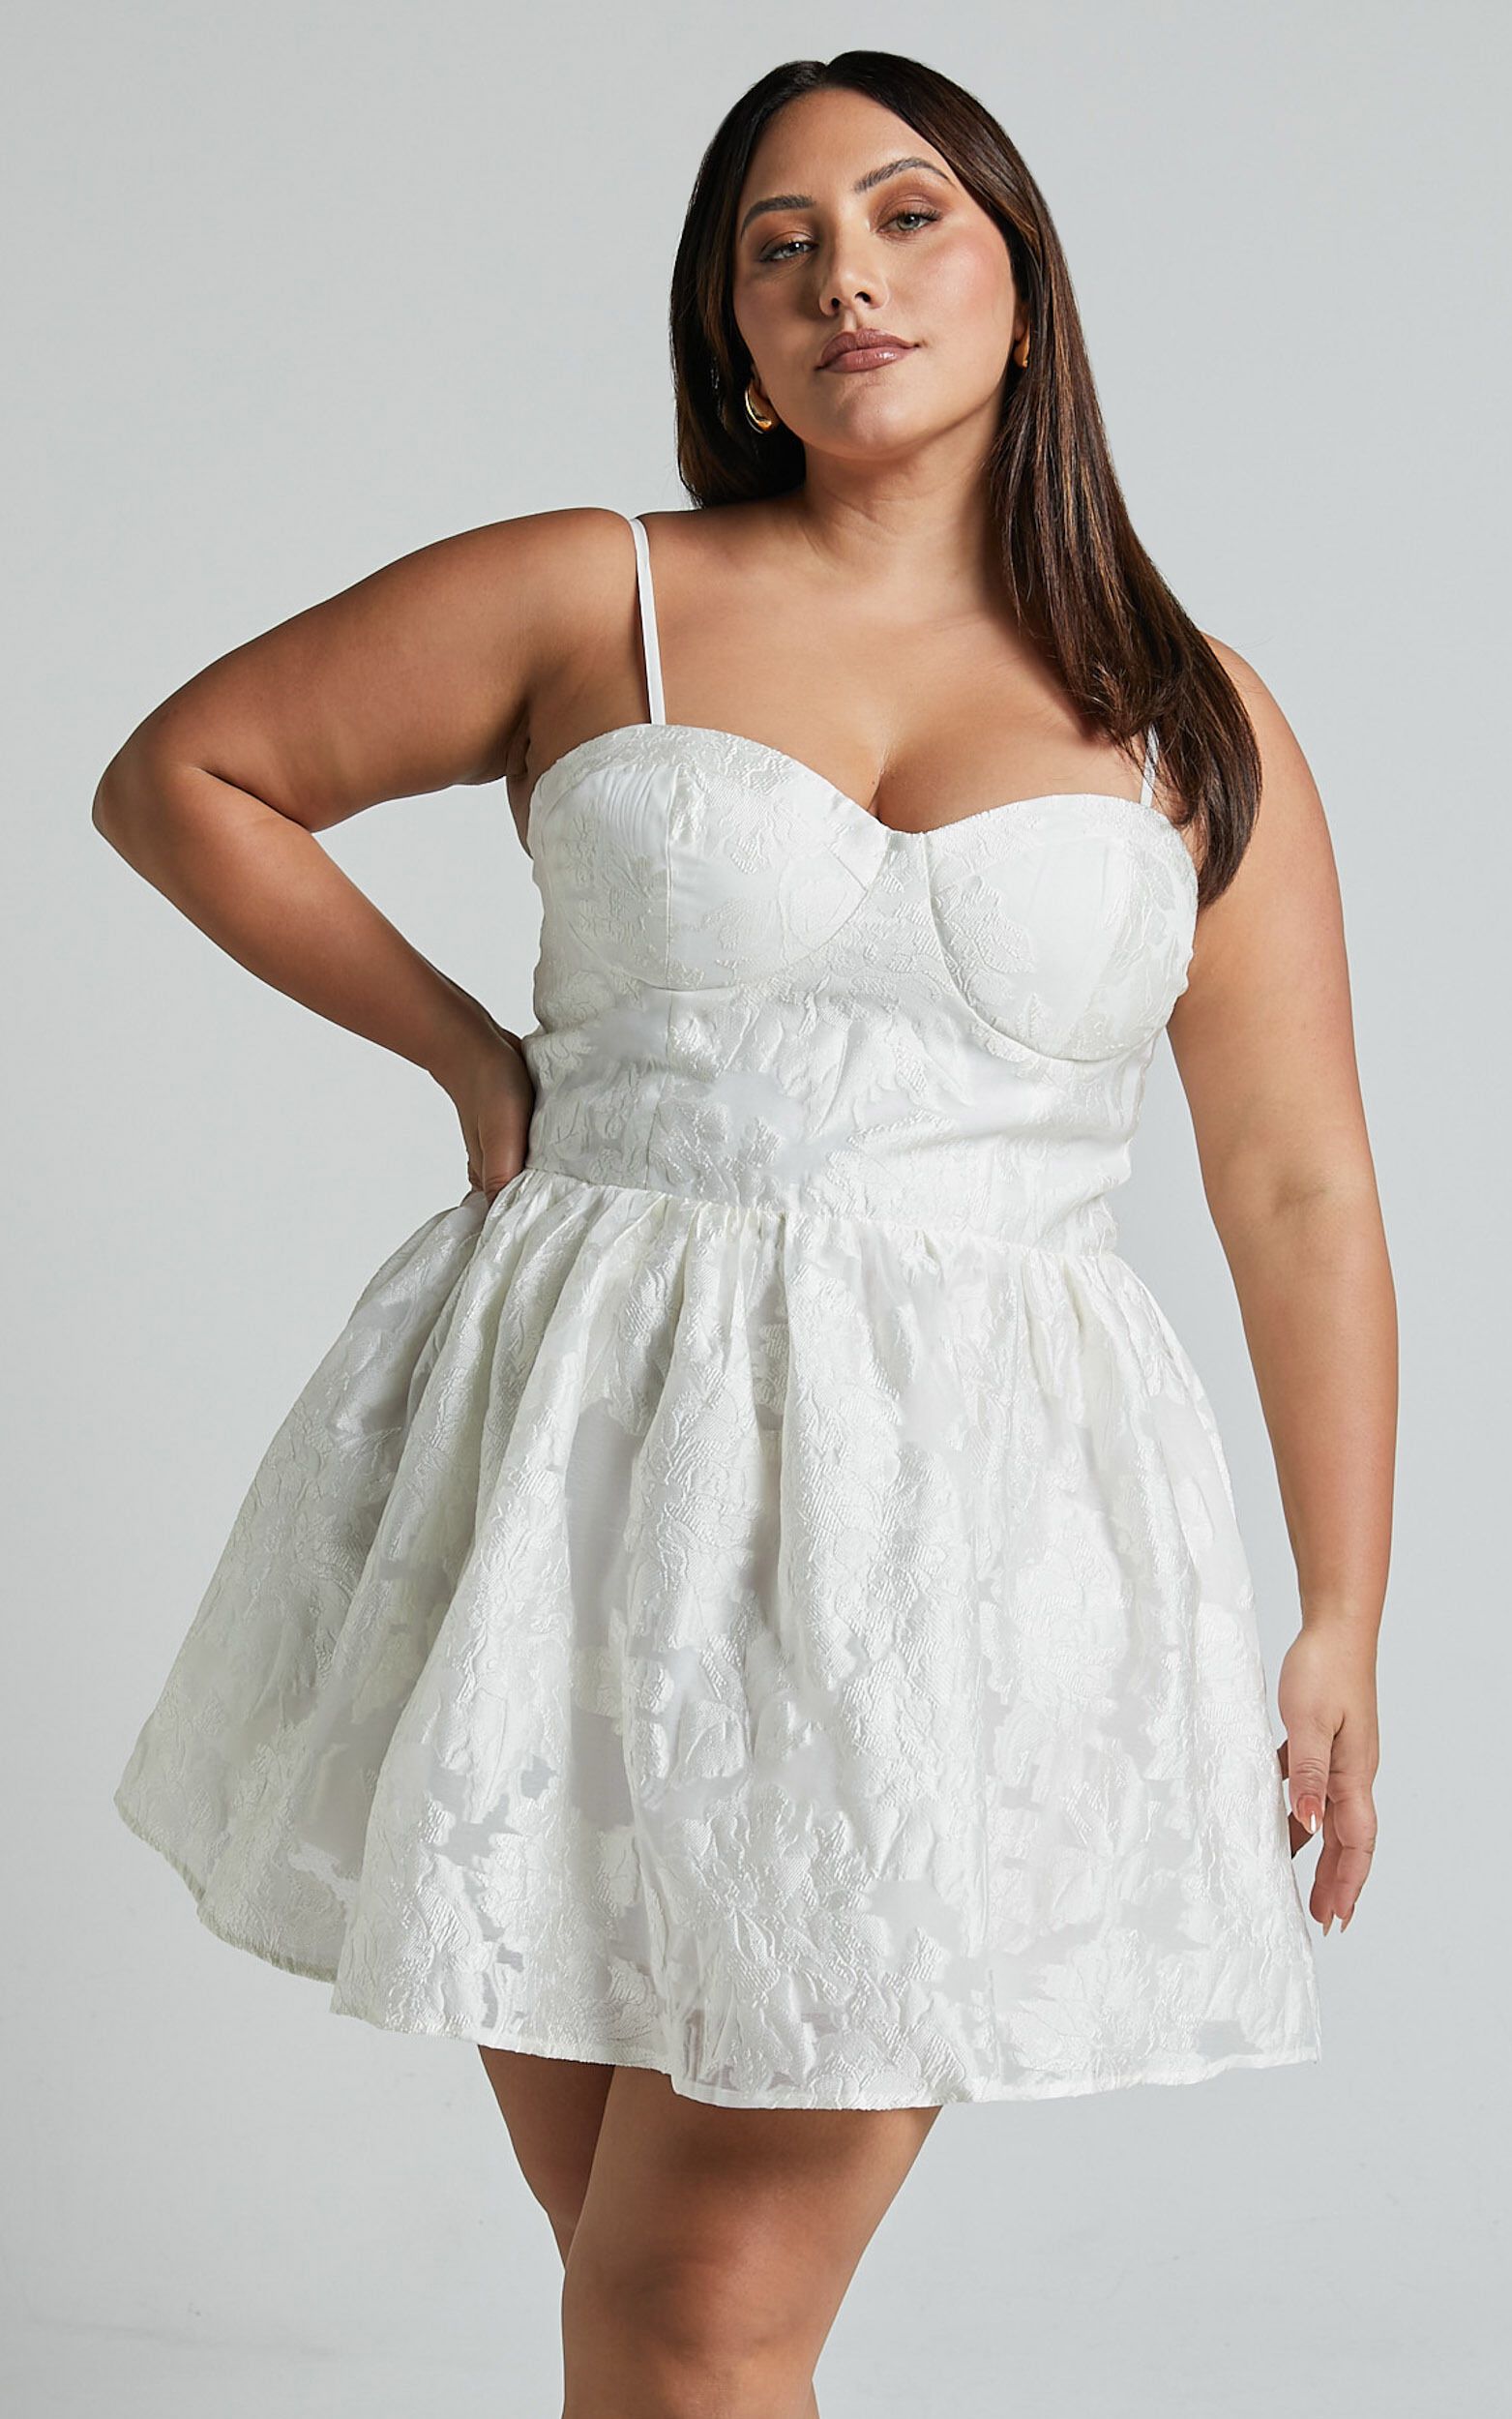 Brailey Mini Dress - Sweetheart Bustier Dress in White Jacquard | Showpo (US, UK & Europe)